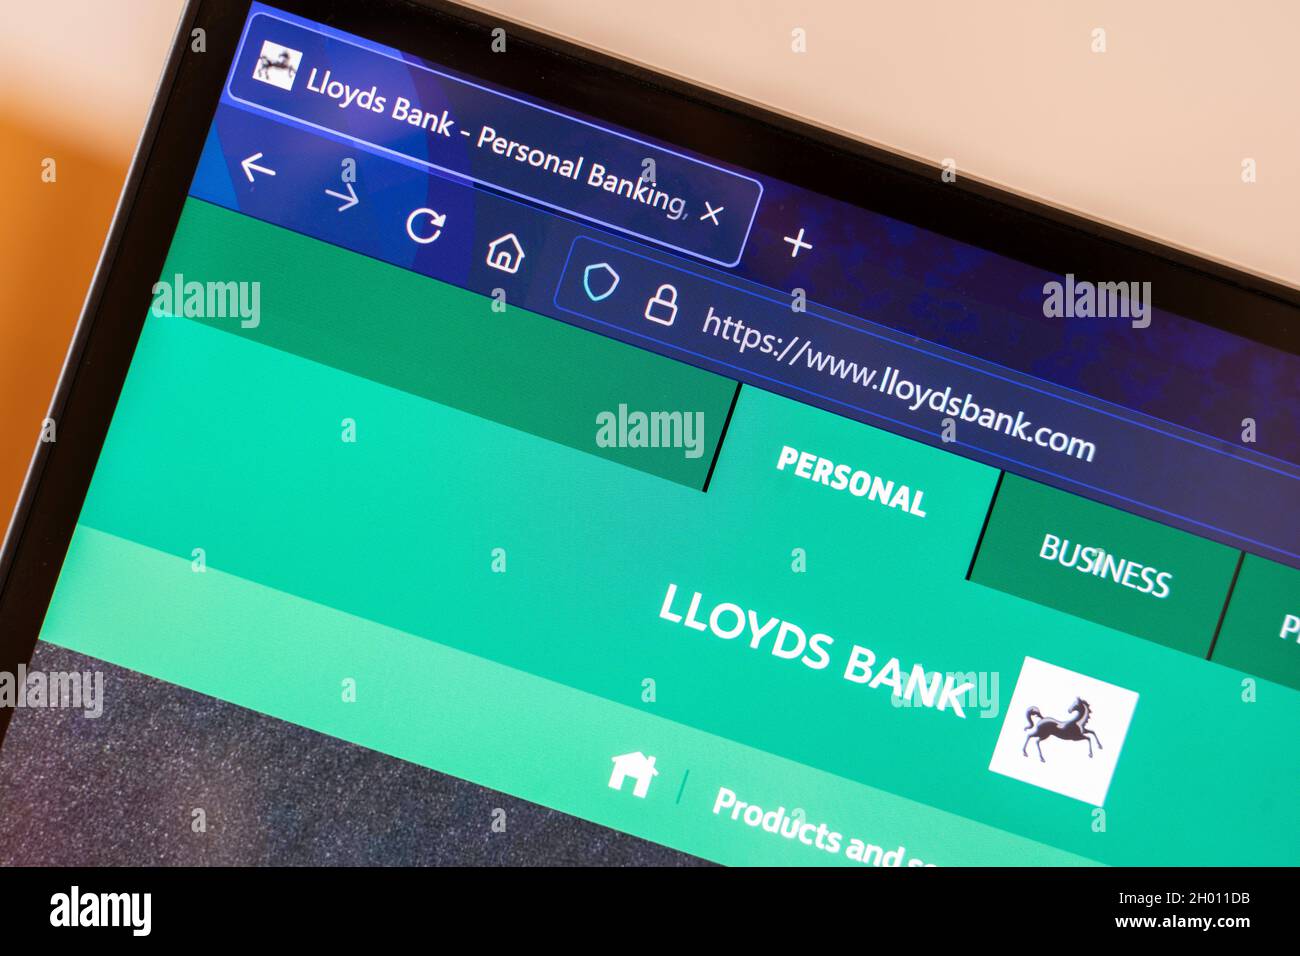 Gros plan du logo et de l'écran d'accueil du site Web de la banque britannique Lloyds sur un écran d'ordinateur portable.Angleterre Banque D'Images